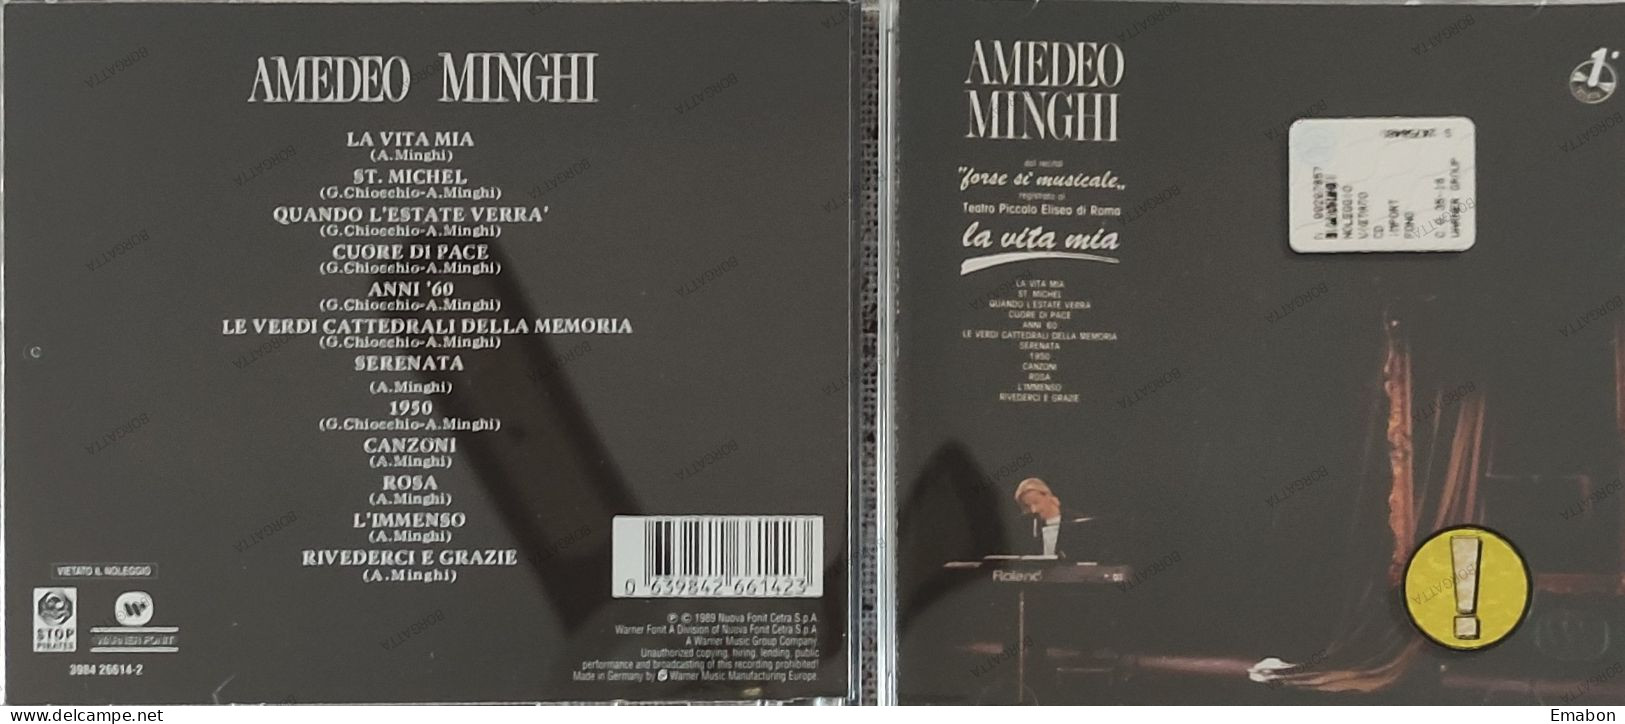 BORGATTA - ITALIANA  - Cd AMEDEO MINGHI - LA VITA MIA - NUOVA FONIT CETRA 1989 -  USATO In Buono Stato - Other - Italian Music